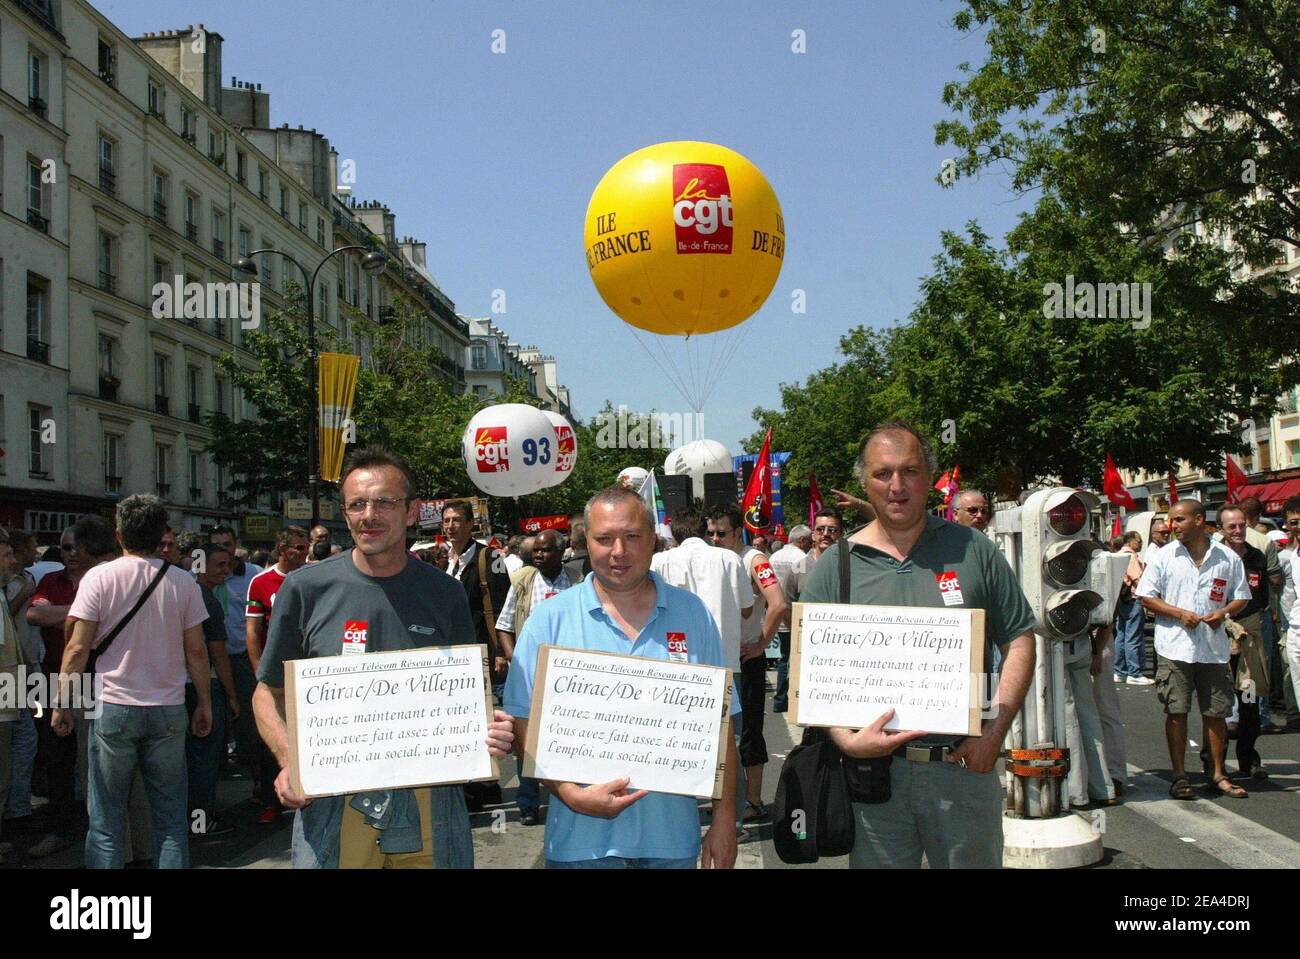 Die französische Gewerkschaft CGT demonstriert am 21. Juni 2005 in den Straßen von Paris gegen das Gesetzesvorhaben des neuen Premierministers De Villepin über Beschäftigung. Foto von Mehdi Taamallah/ABACA. Stockfoto